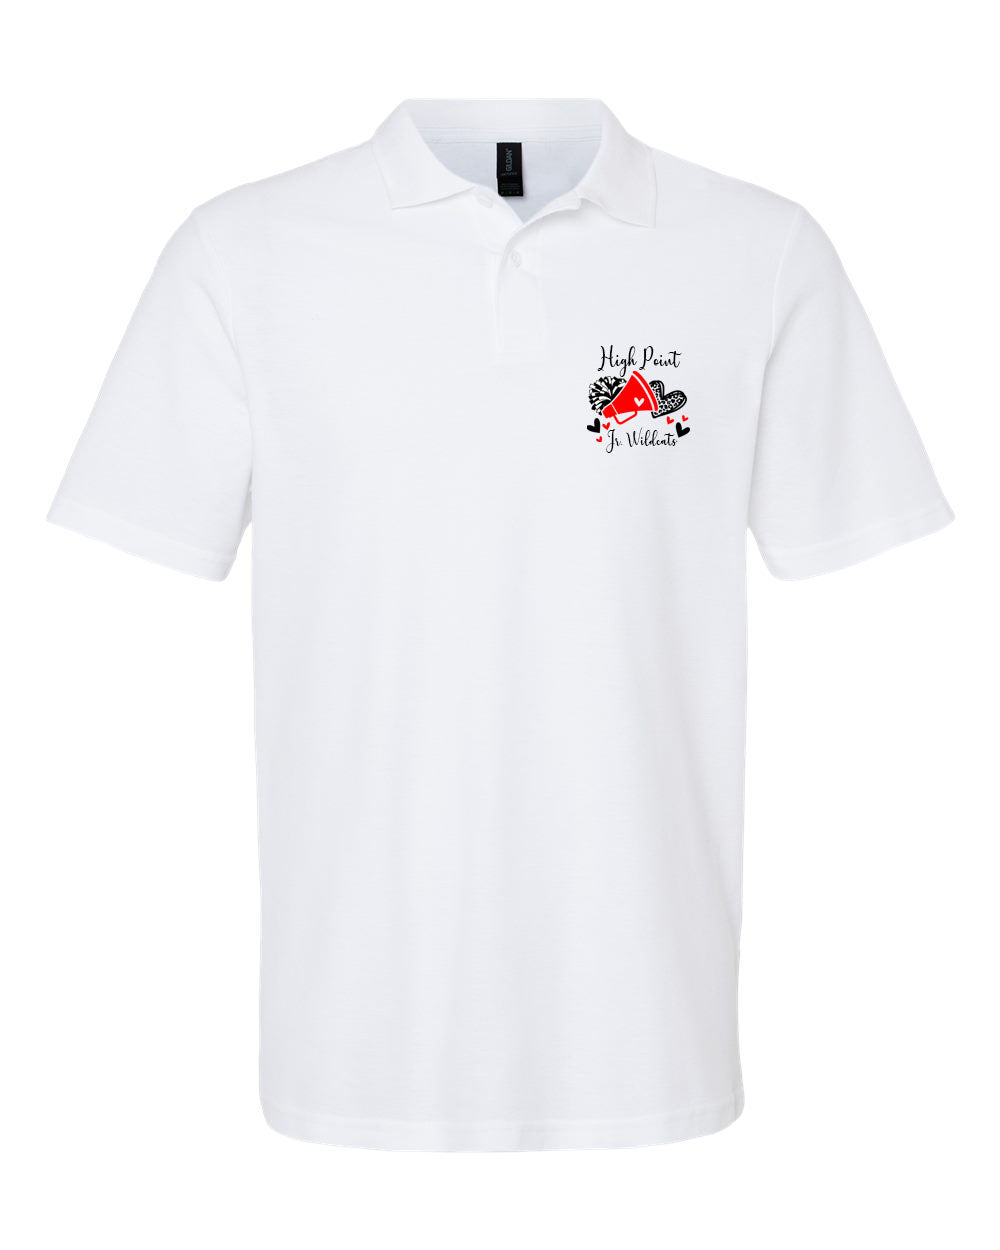 High Point Cheer Design 6 Polo T-Shirt